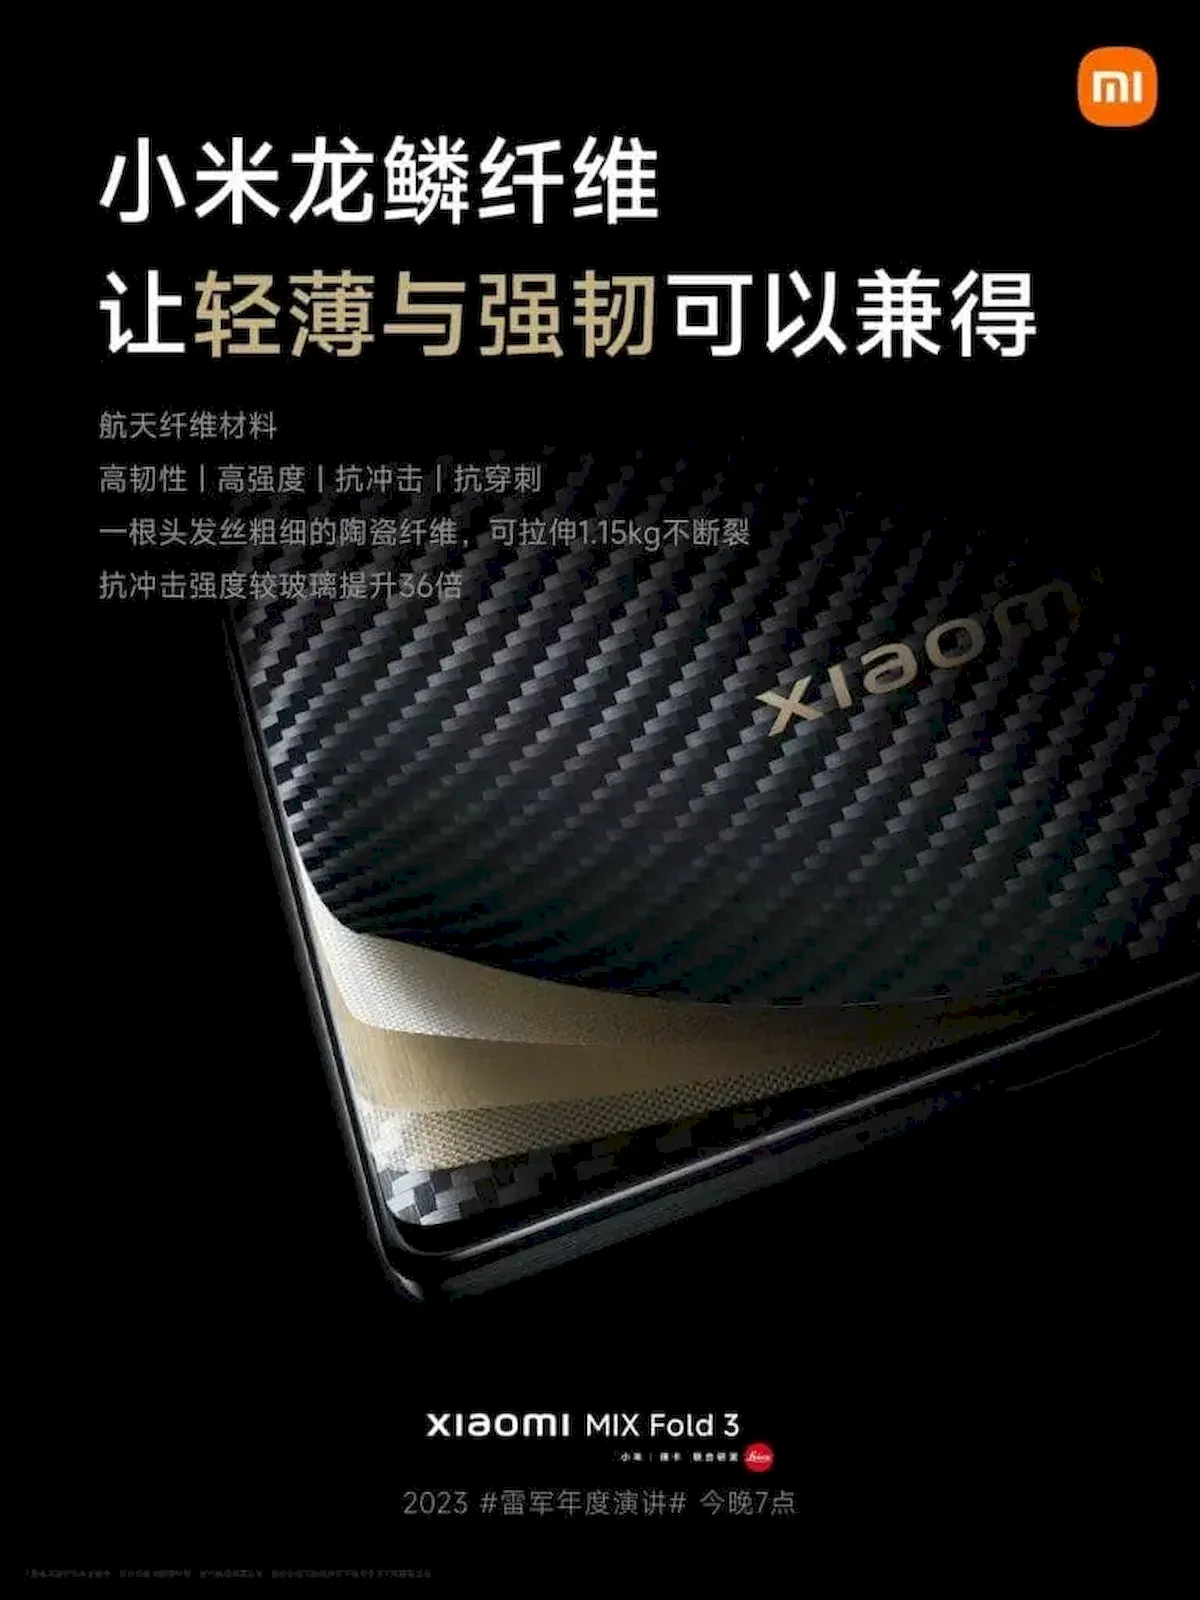 Xiaomi Mix Fold 3 terá uma edição chamada Dragon Scale Fiber